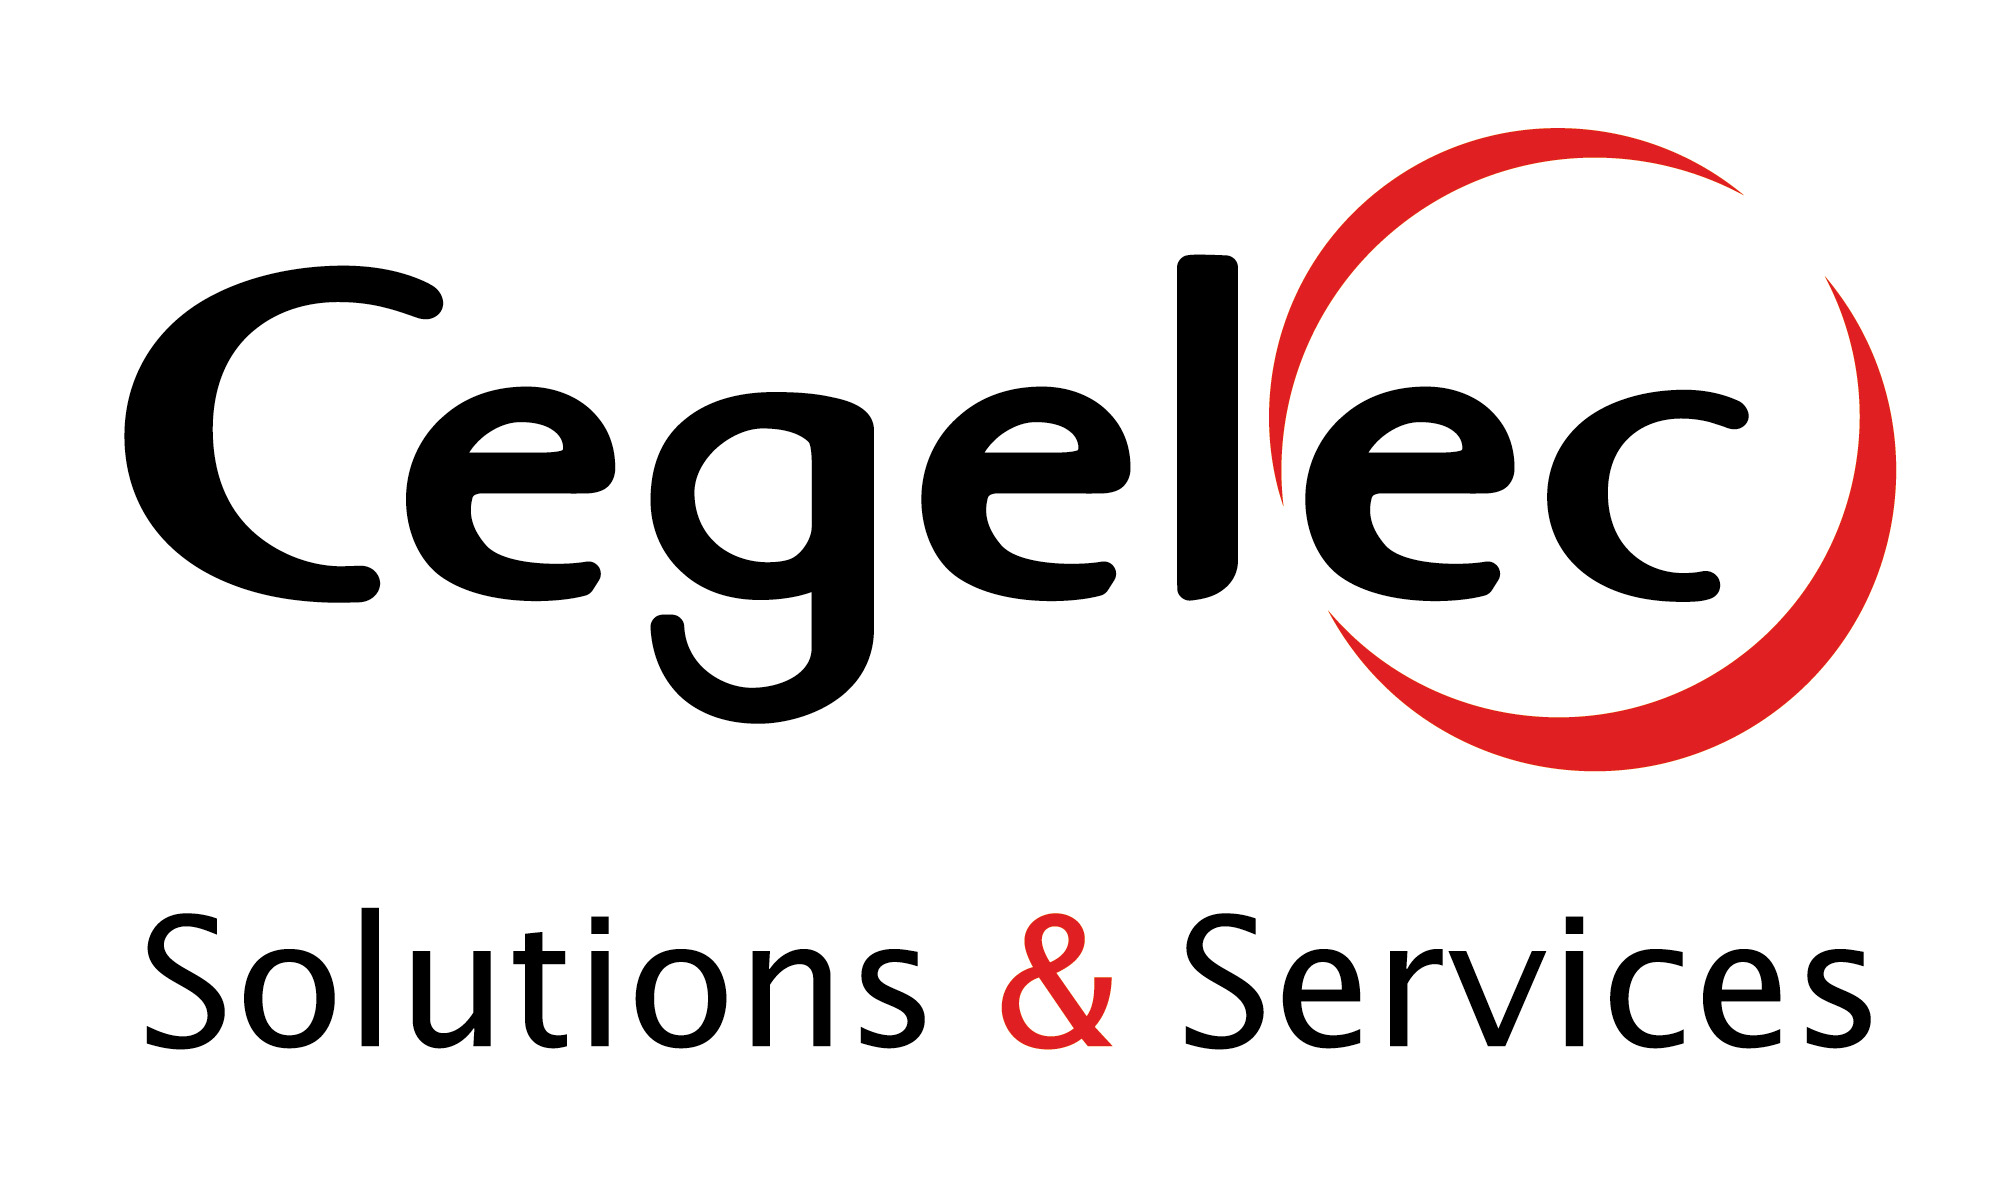 Logo Cegelec